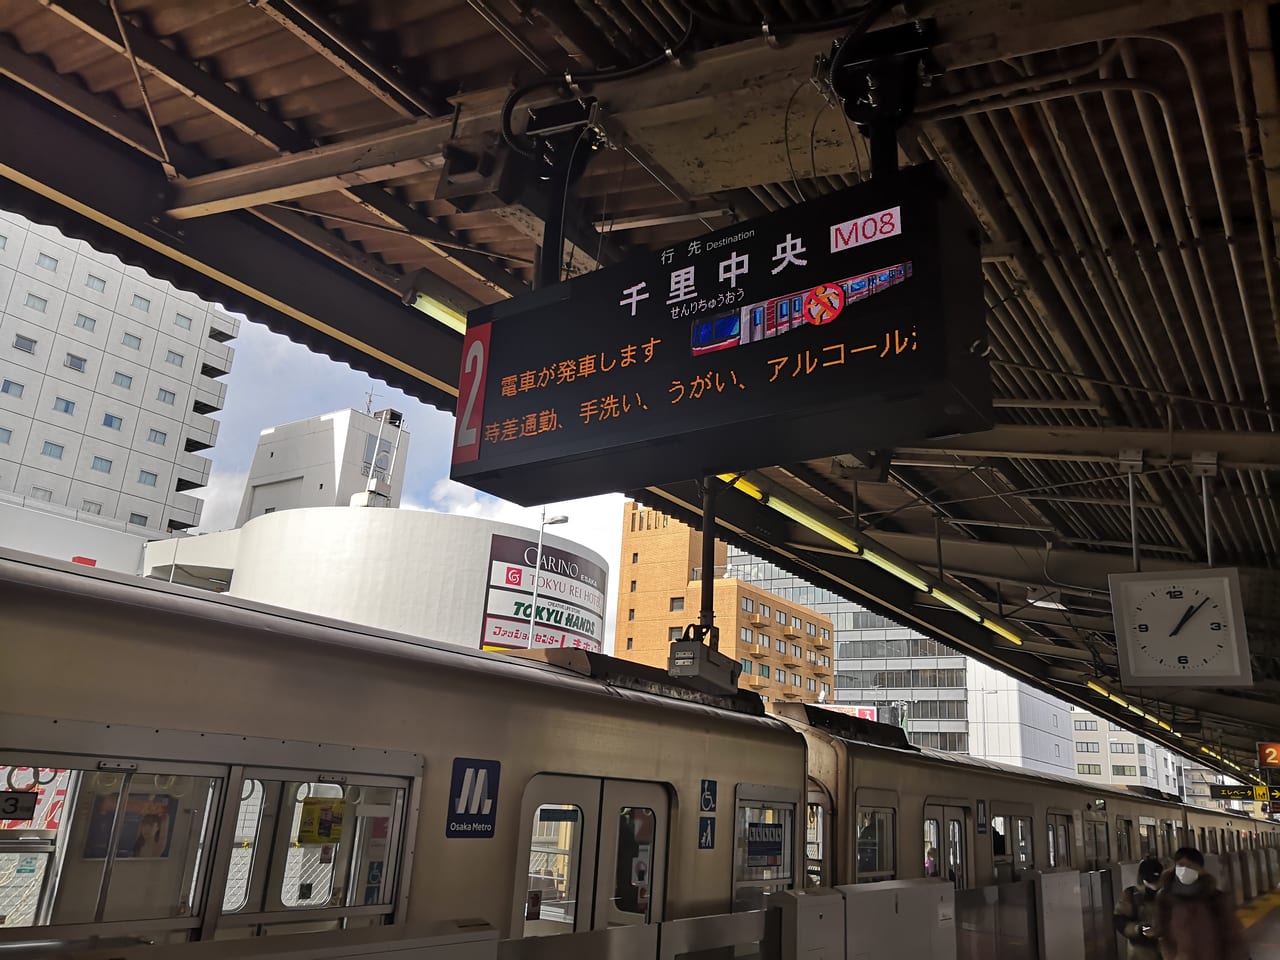 吹田市 江坂駅がおよそ1年をかけて地震に強く綺麗な駅に 発車標はフルカラーledになりました 号外net 吹田